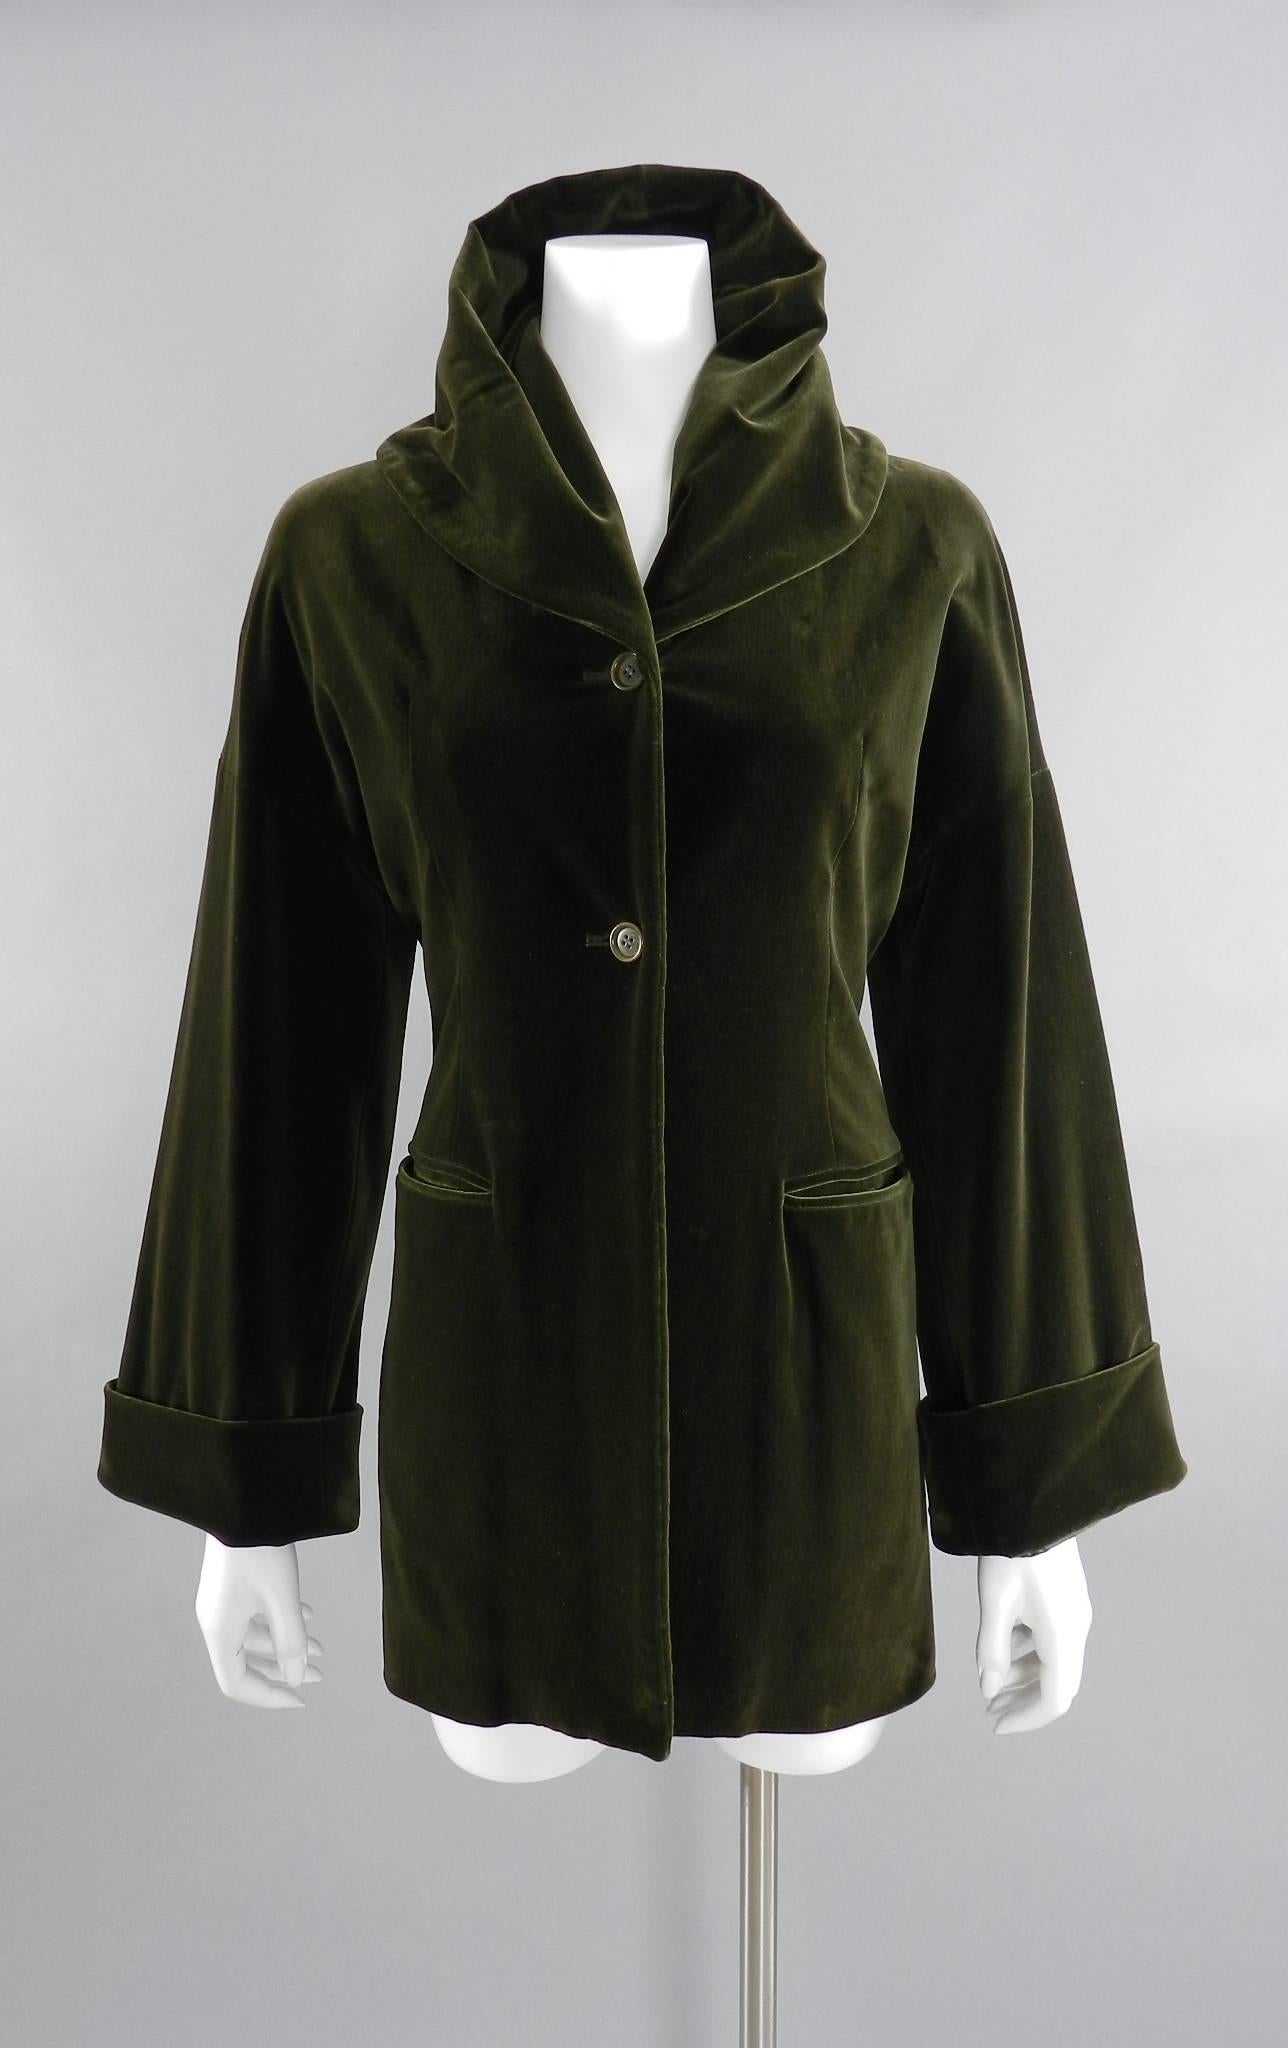 Women's Romeo Gigli Vintage 1989 Olive Green Velvet Jacket Coat